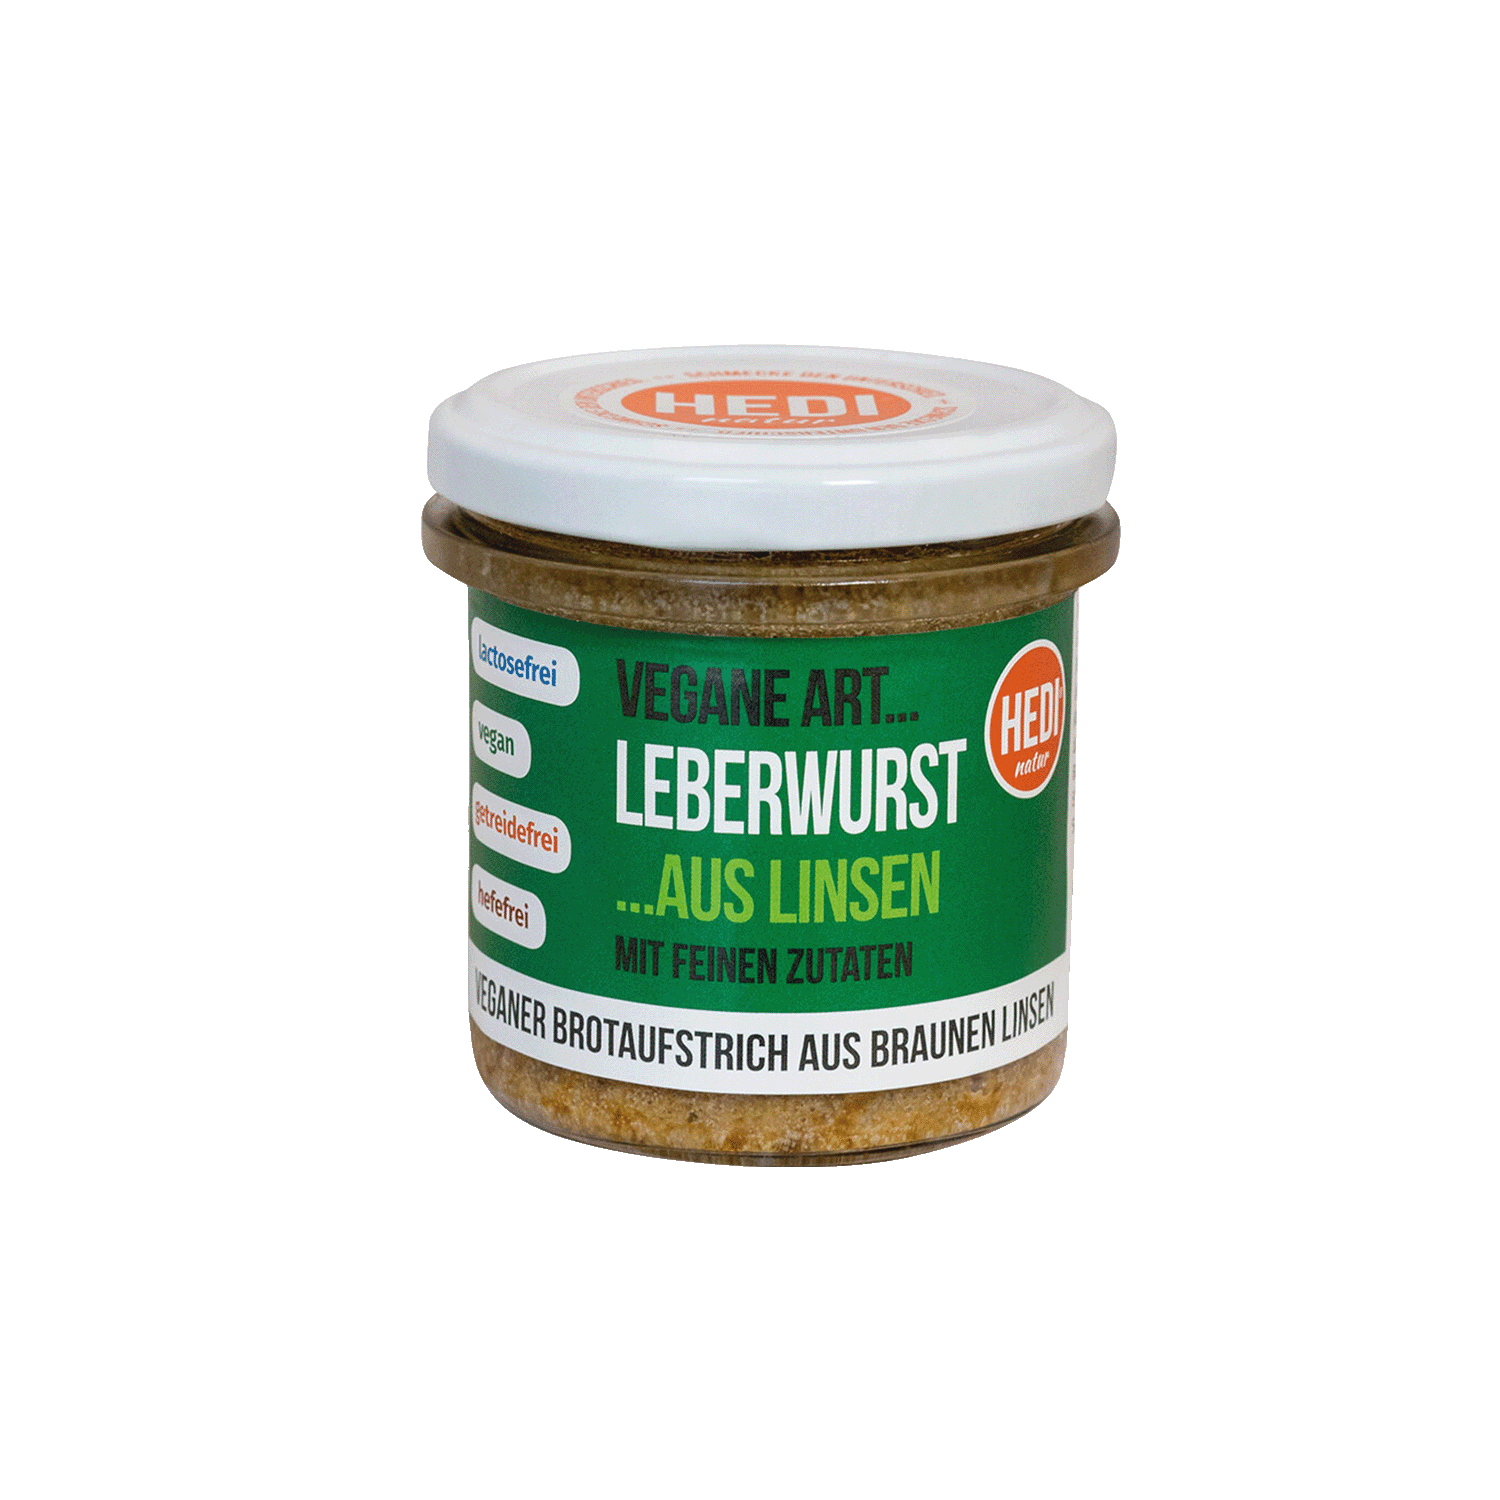 Vegane Art Leberwurst aus Linsen, BIO, 140g